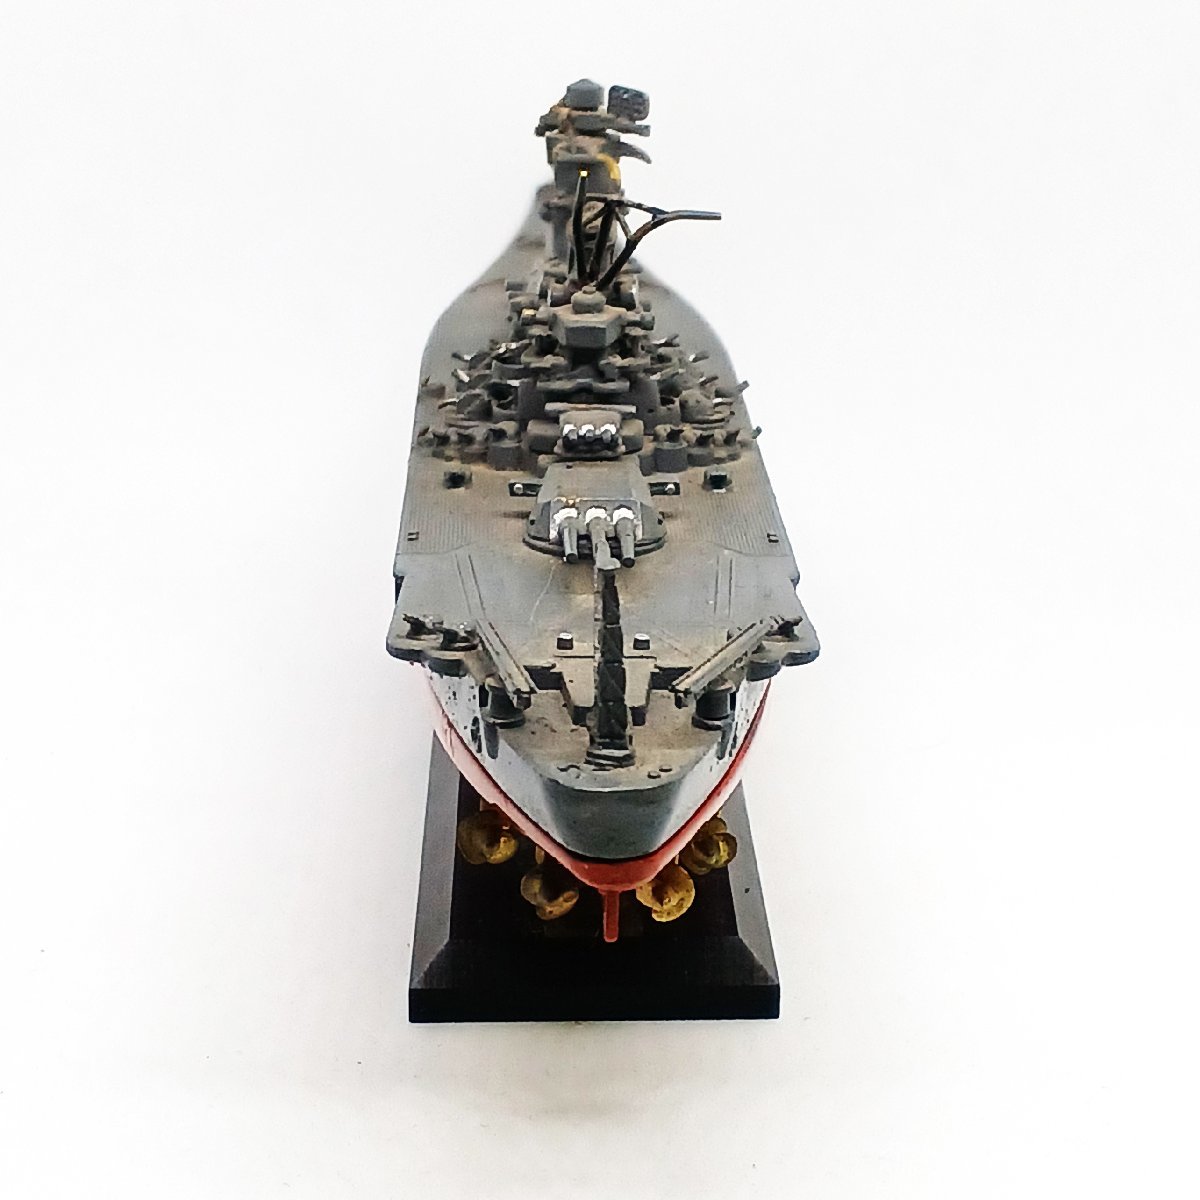  KONI si производства броненосец Yamato миниатюра 1/1250 retro хобби игрушка игрушка б/у KONISHI*